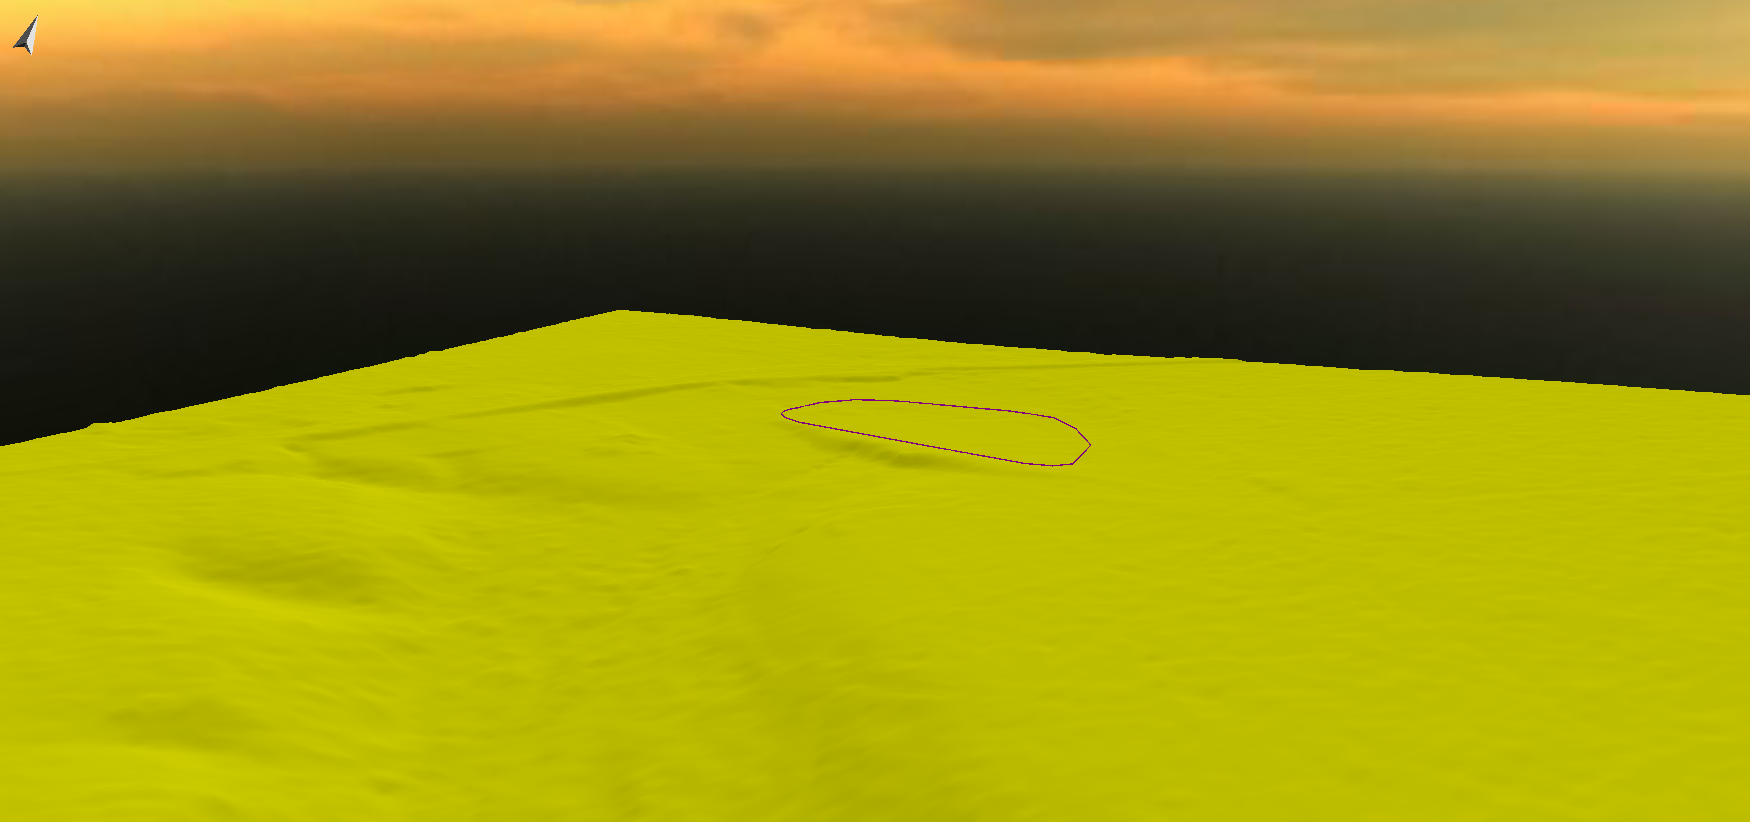 Abbildung 4: 3D-Projektansicht mit einfarbigem DGM und der neuen Linie, die auf dem DGM liegt.